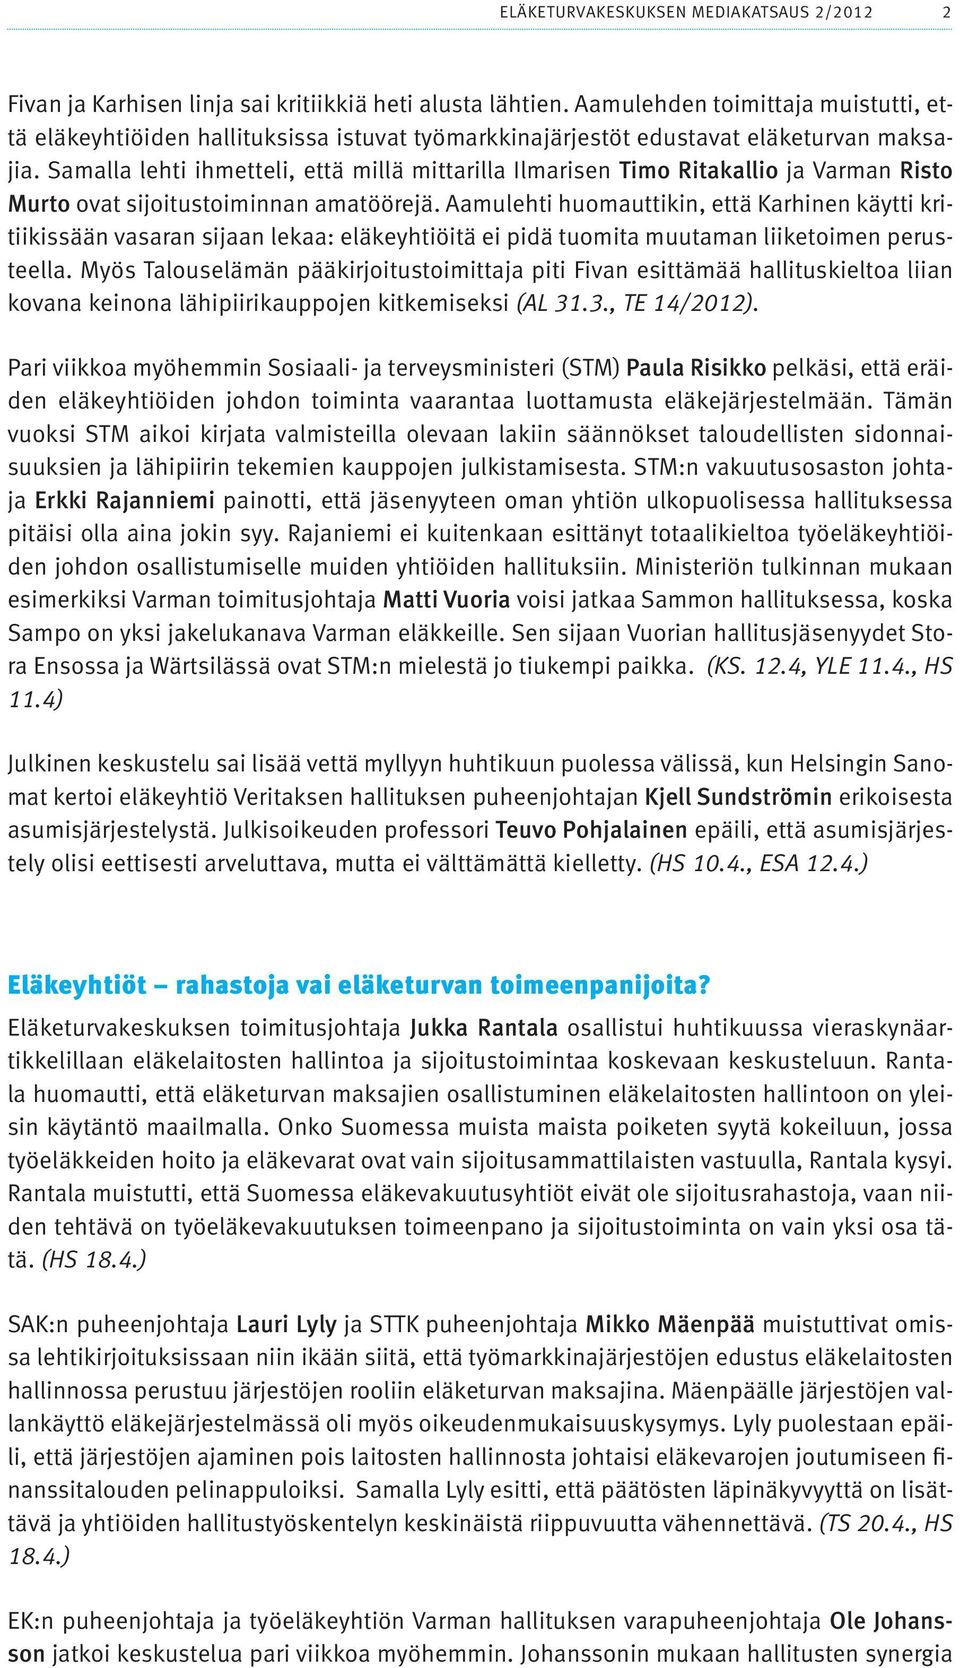 Samalla lehti ihmetteli, että millä mittarilla Ilmarisen Timo Ritakallio ja Varman Risto Murto ovat sijoitustoiminnan amatöörejä.